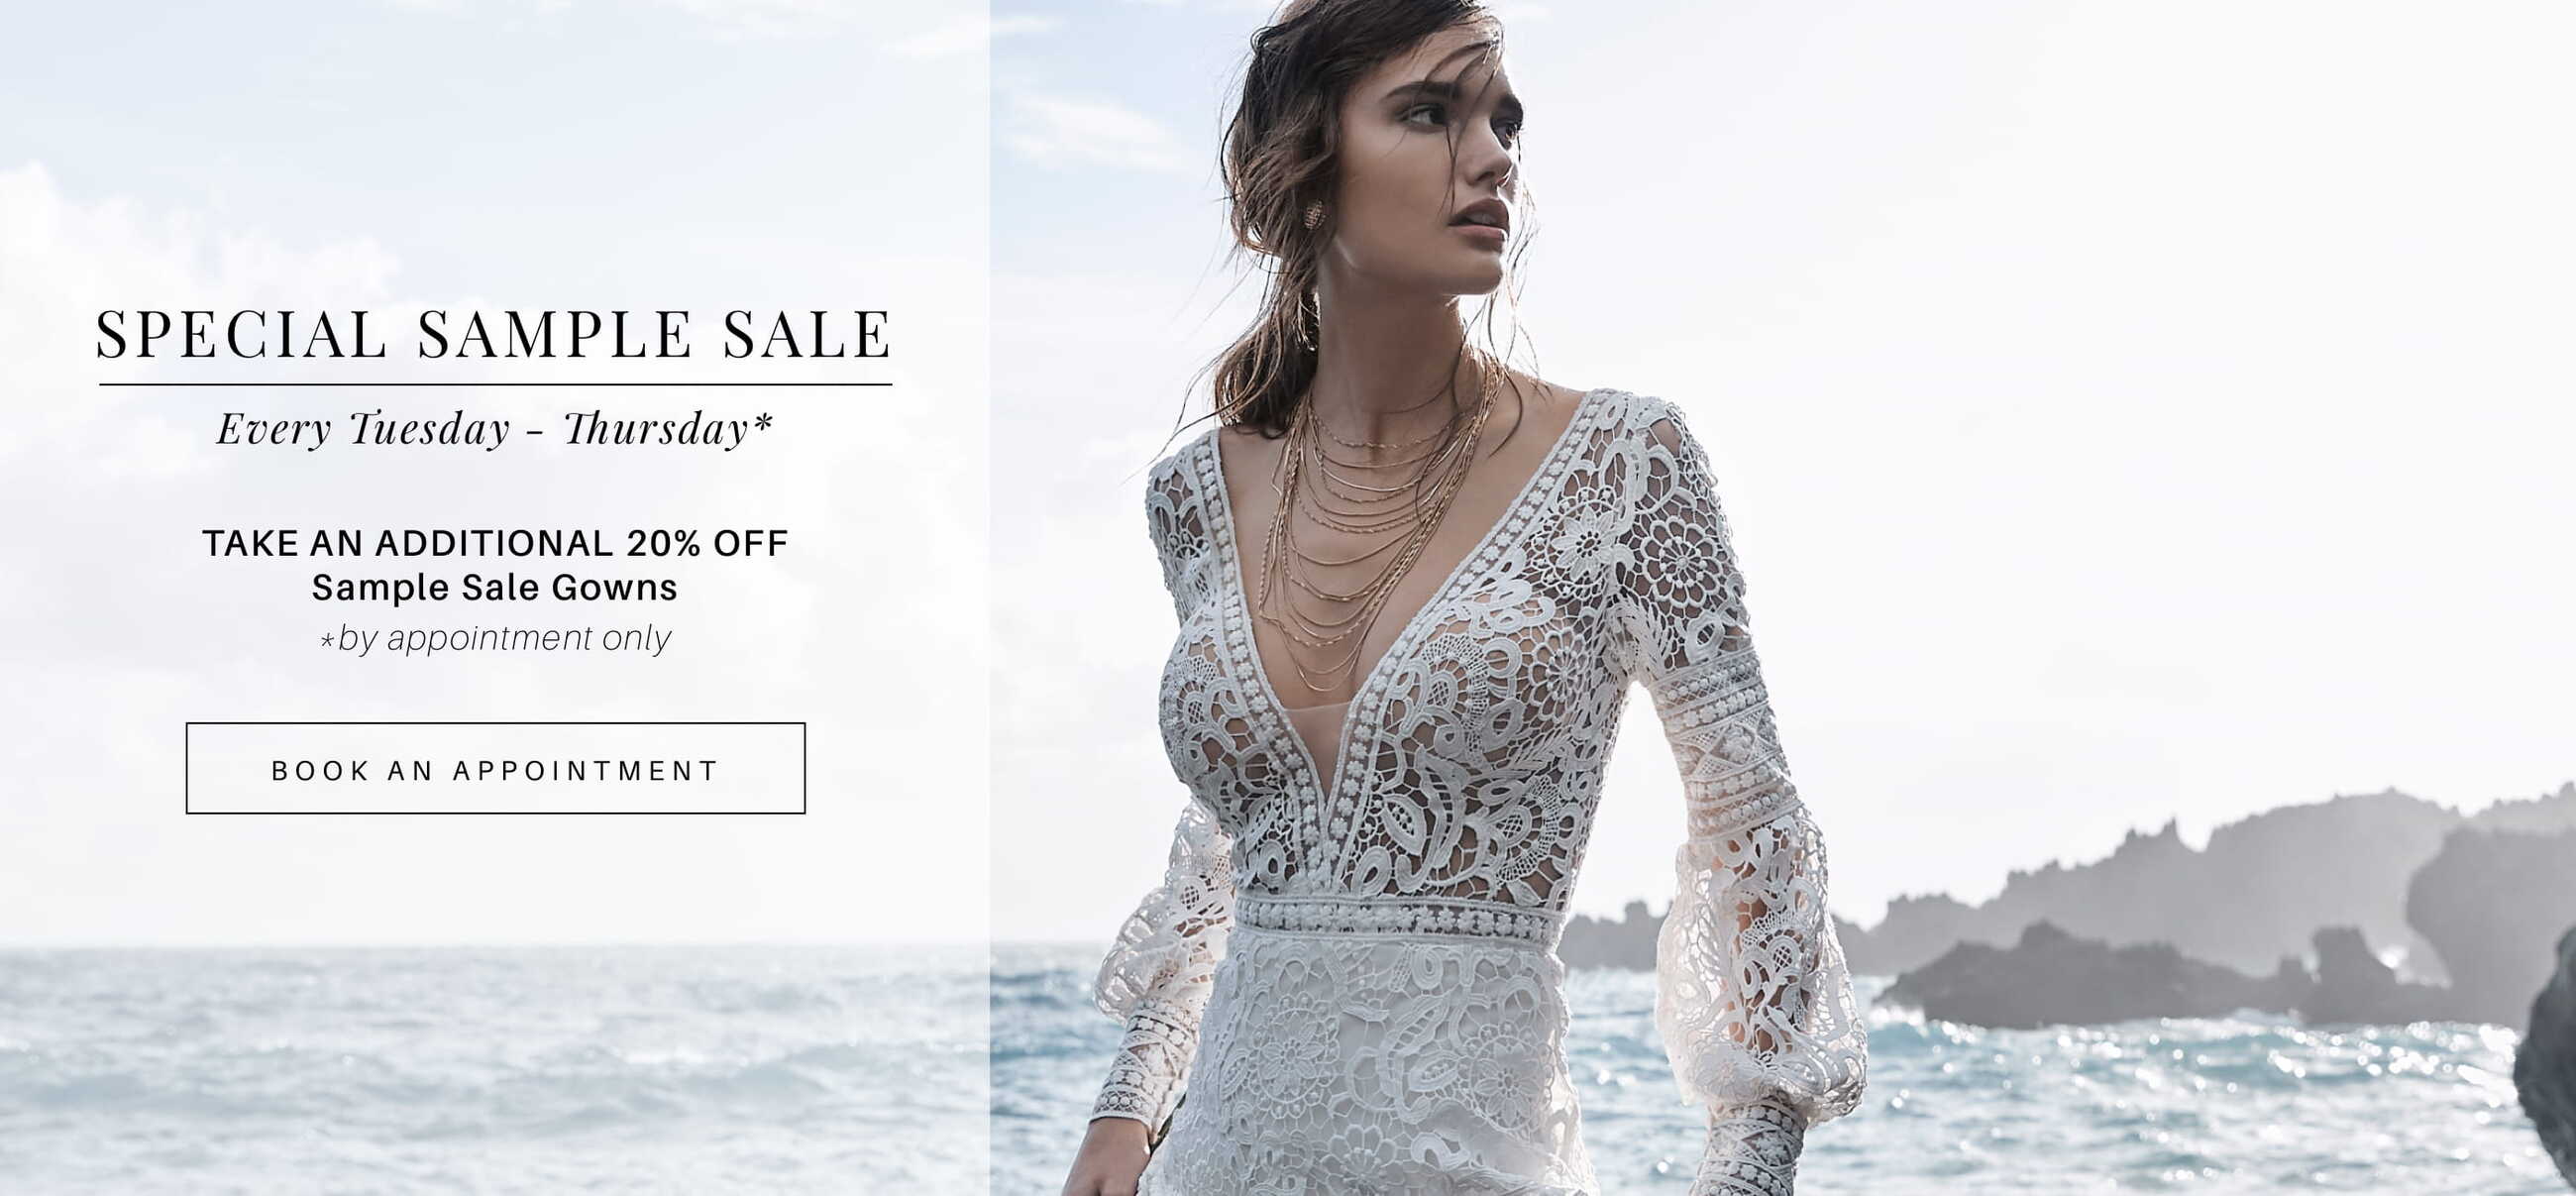 Sample Sale at Renee Austin Wedding. Find your dream dress for less. Desktop image.